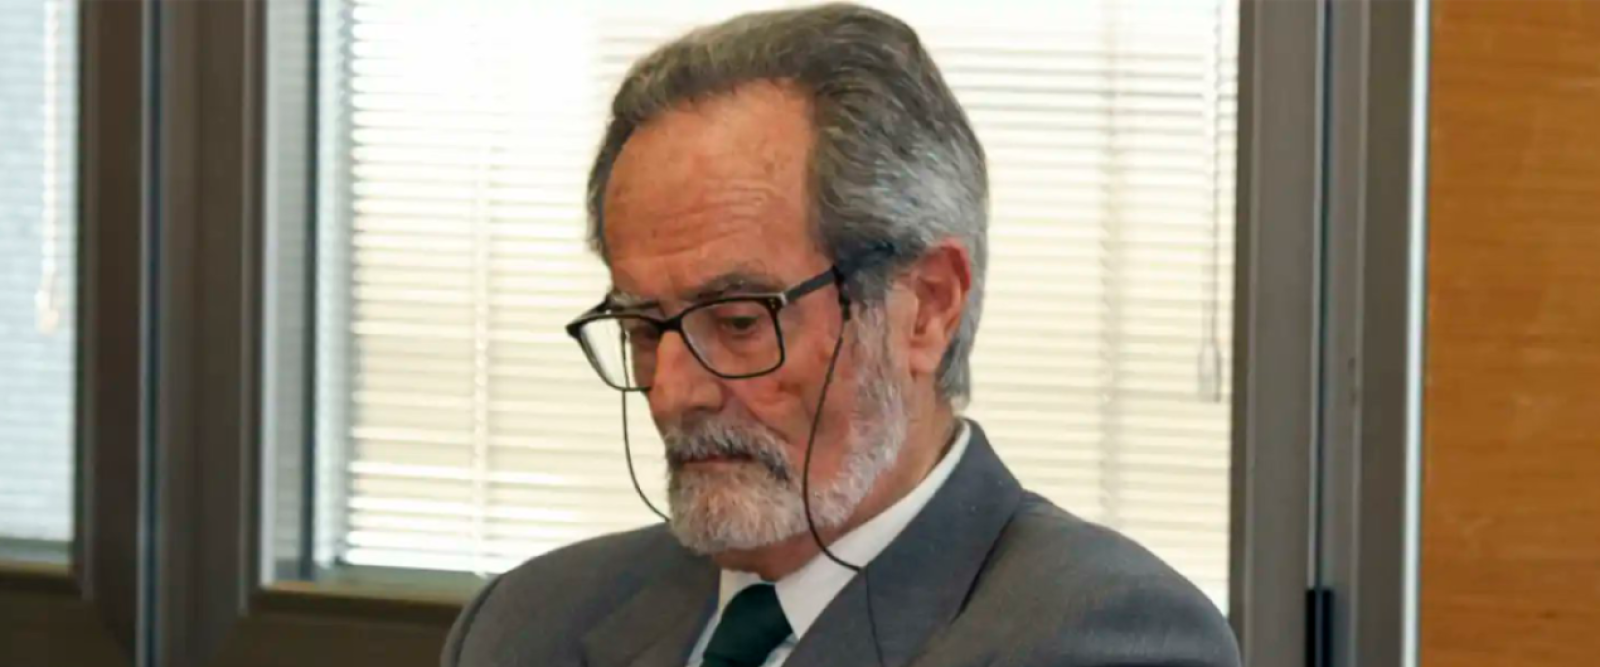 Declaran culpable de asesinato a hombre de 81 años que mató a ladrón en España